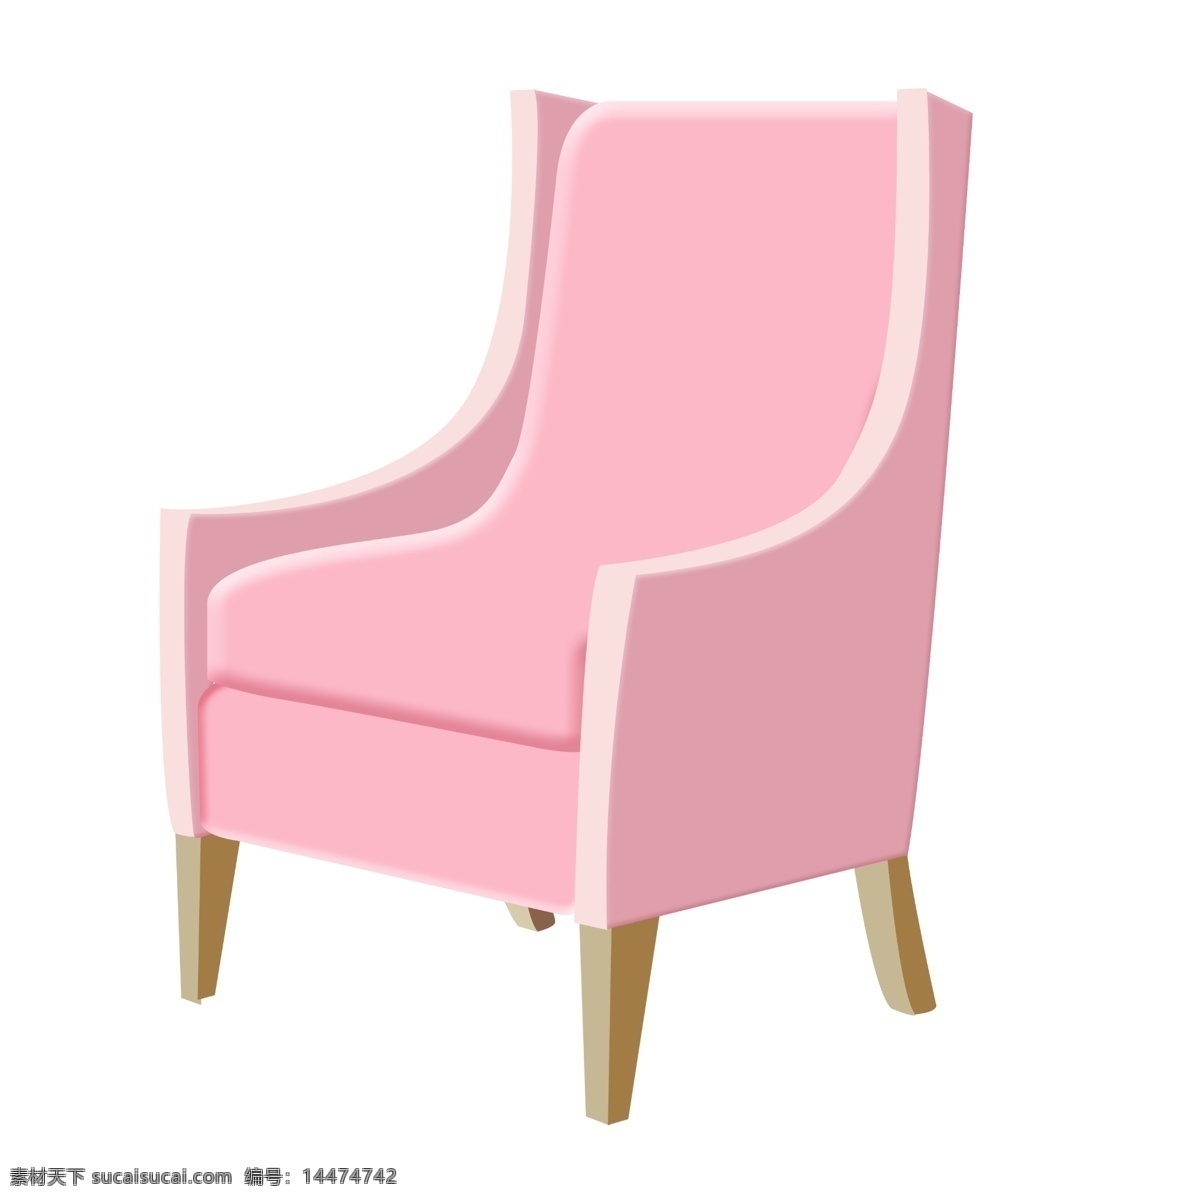 粉色 椅子 装饰 插画 粉色的椅子 家具椅子 真皮椅子 办公椅子 漂亮的椅子 创意椅子 立体椅子